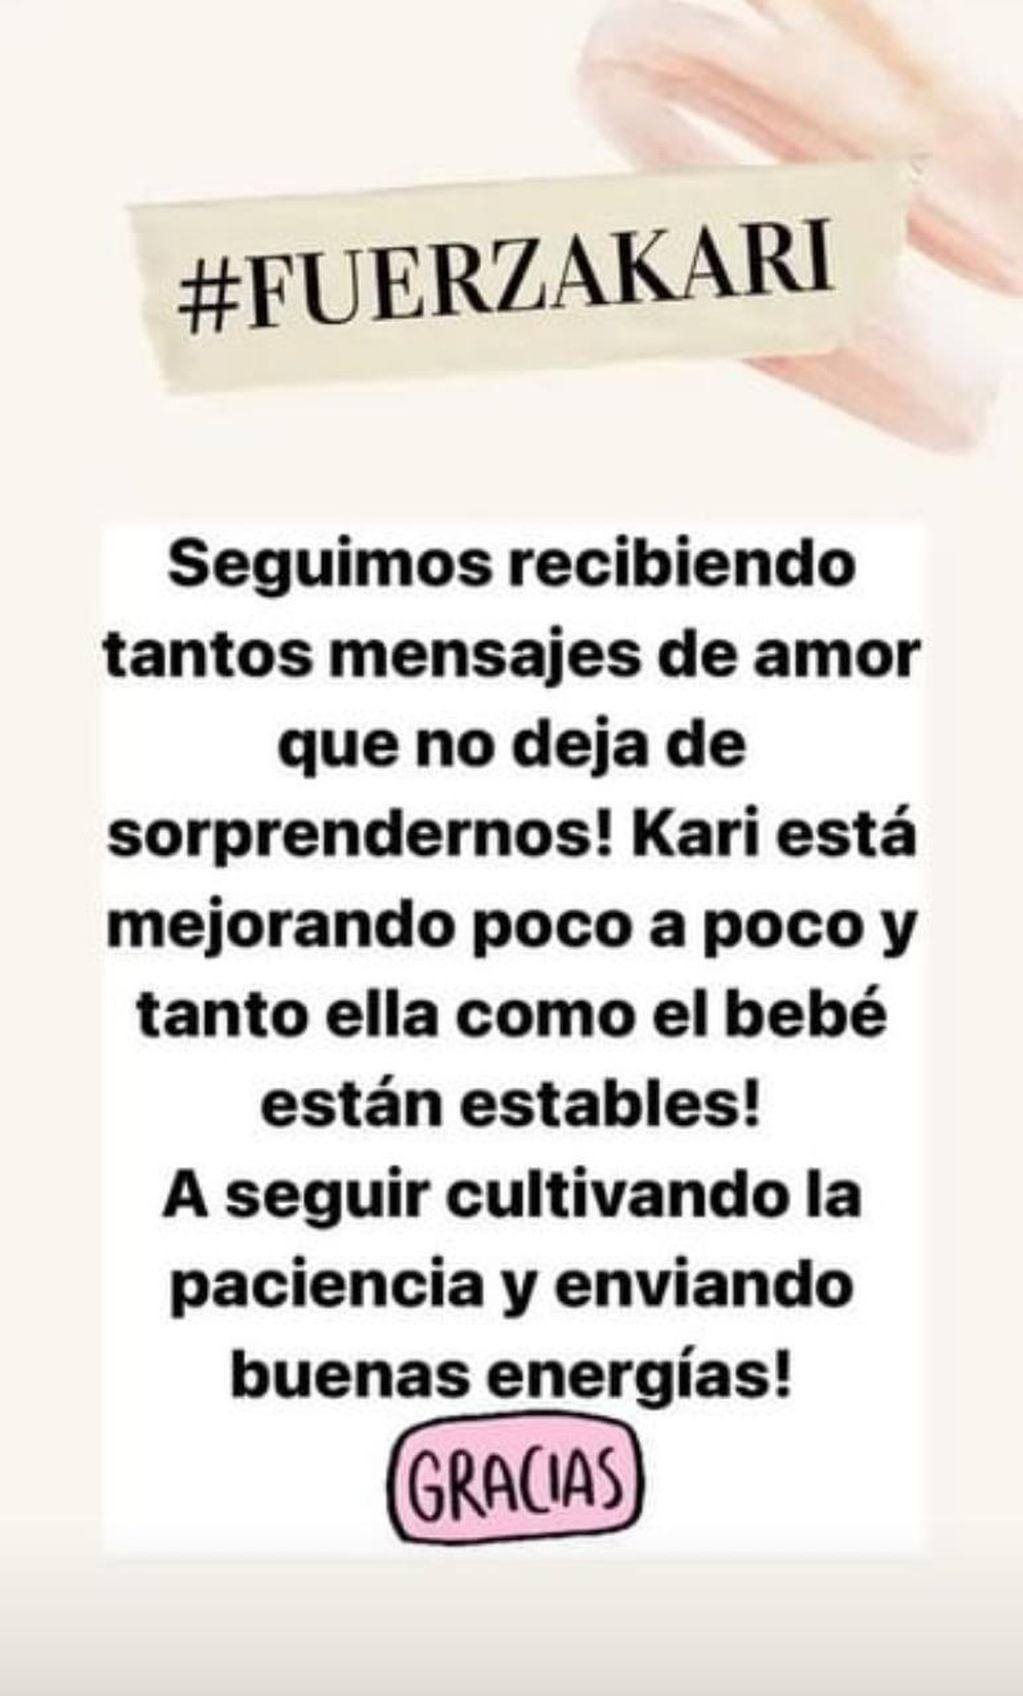 La nueva información que compartieron desde el perfil de Karina en Instagram.